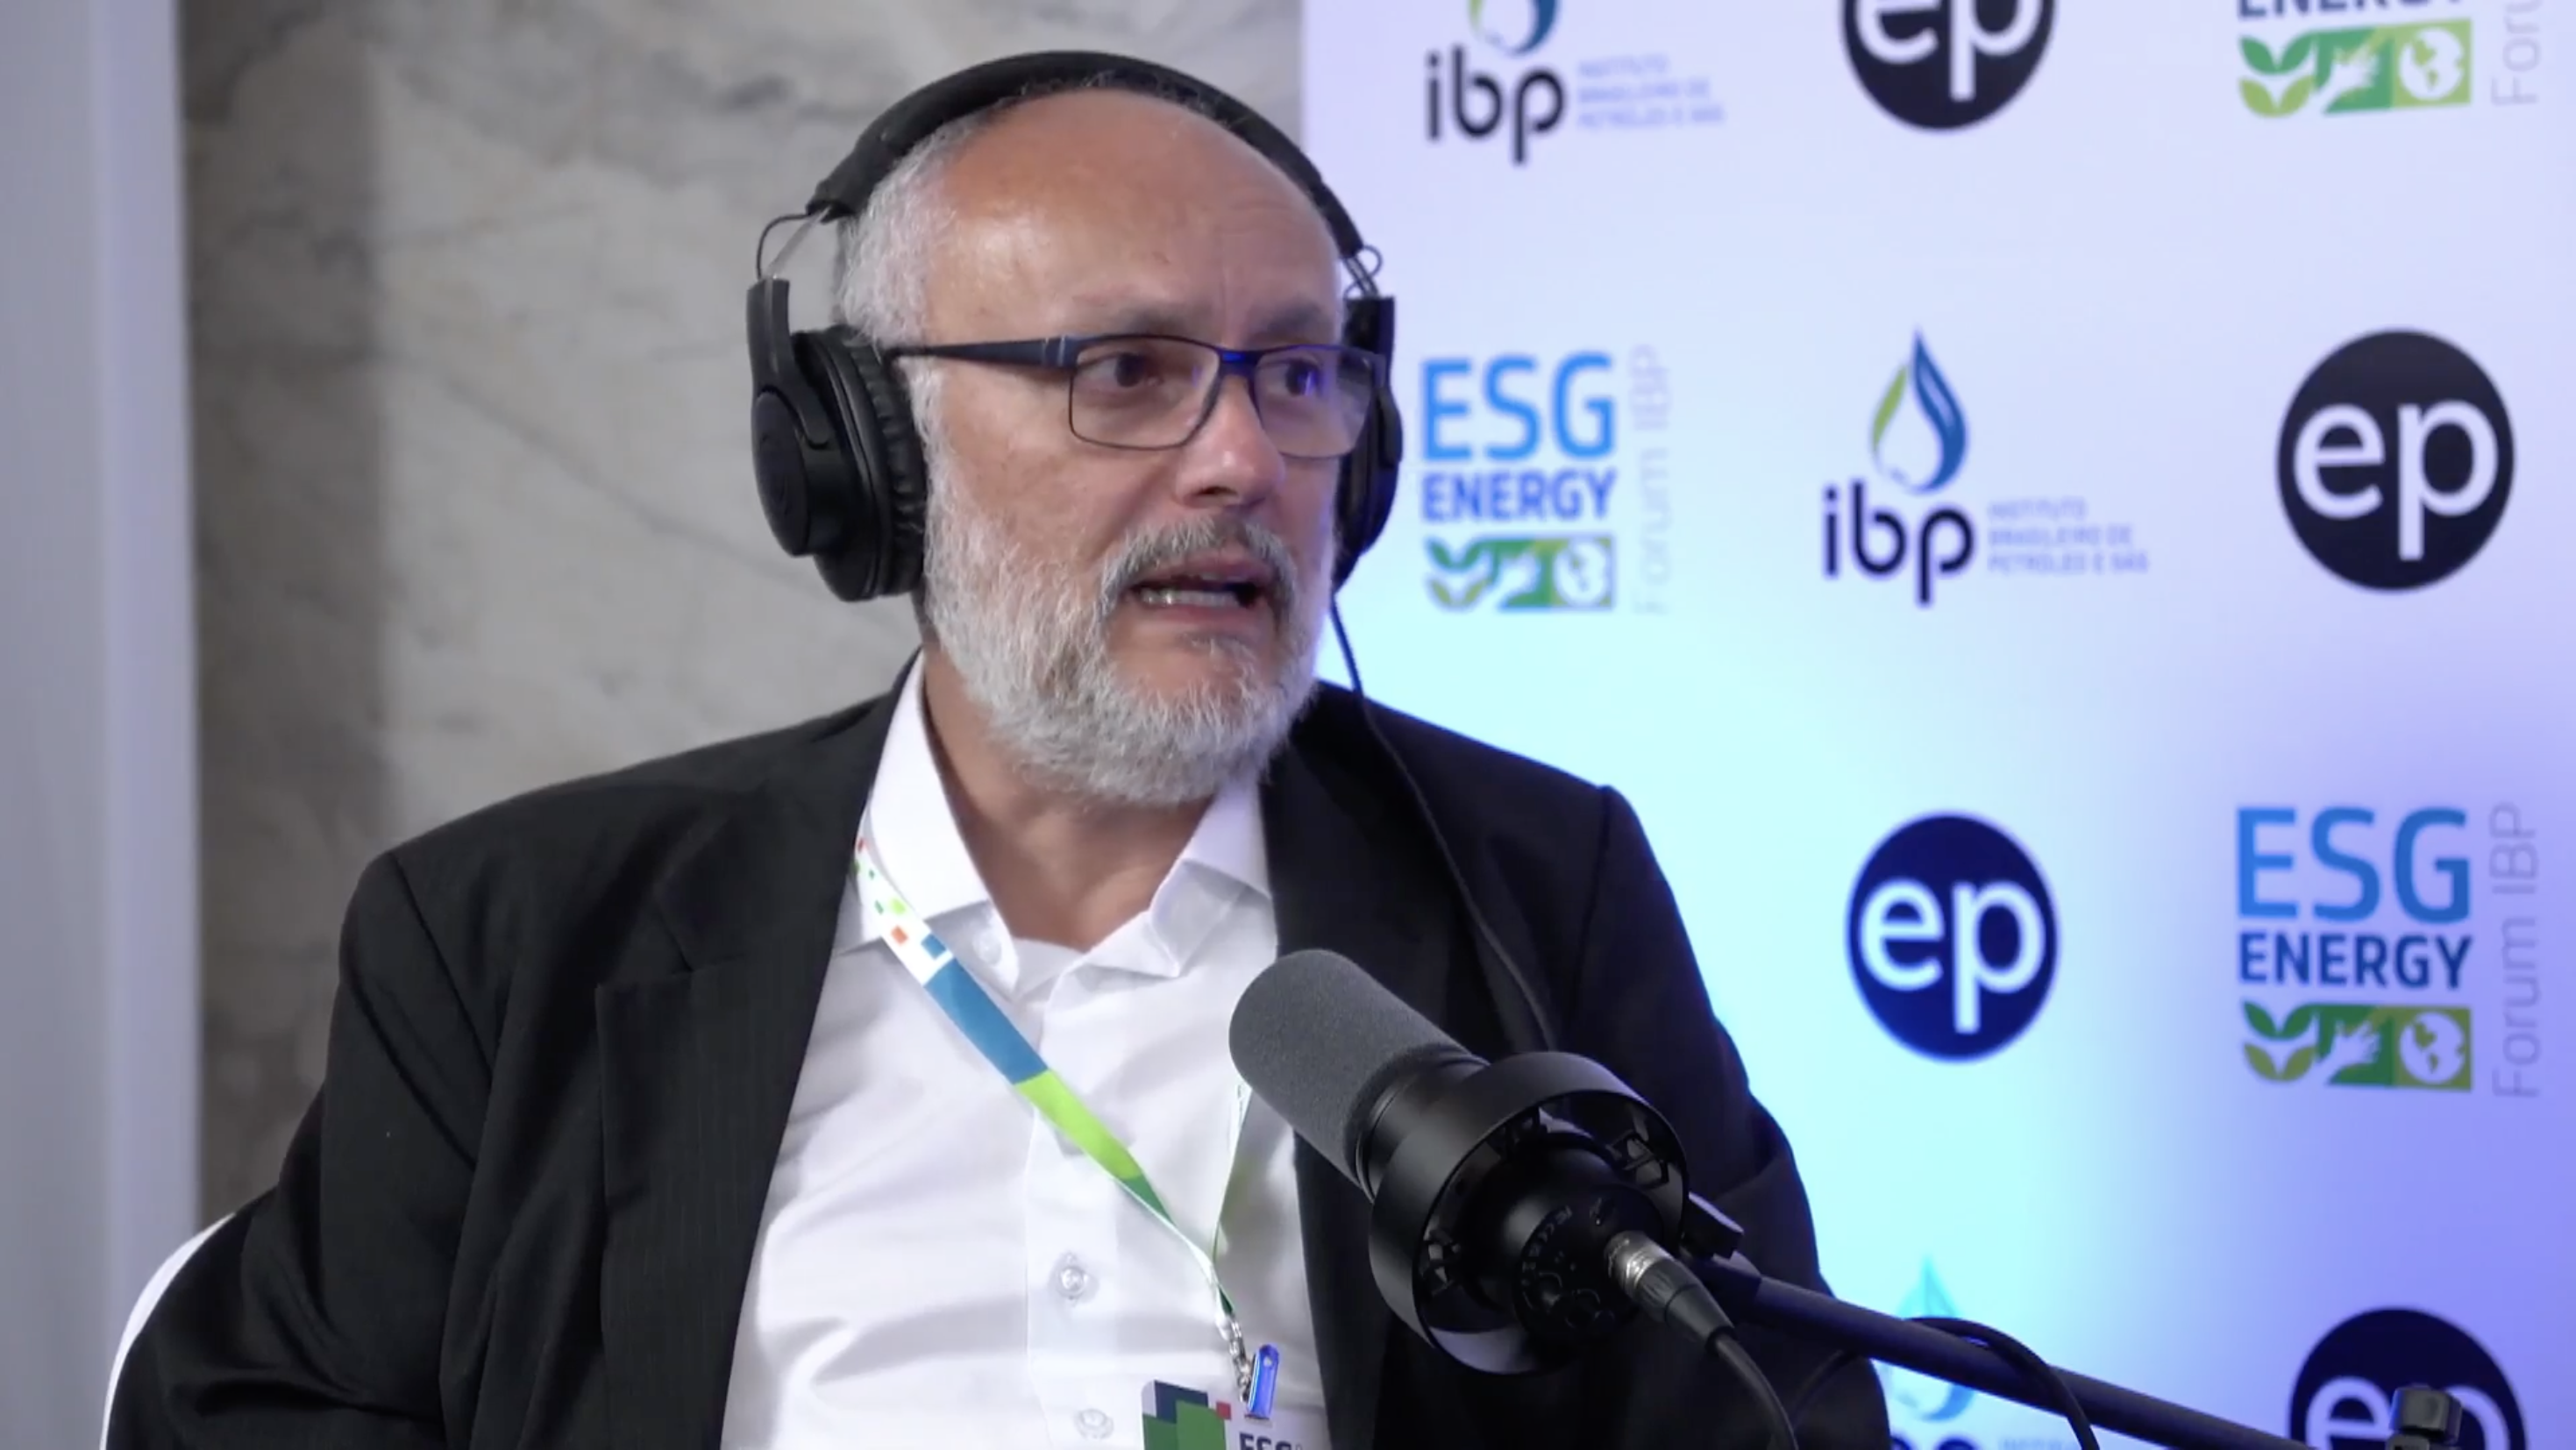 NTS quer que transportadoras assumam chamadas públicas de gás natural. Na imagem: CEO da NTS, Erick Portela, em entrevista ao estúdio epbr durante o ESG Energy Forum, realizado pelo IBP, no Rio de Janeiro em junho de 2023 (Foto: Stéferson Faria/epbr)